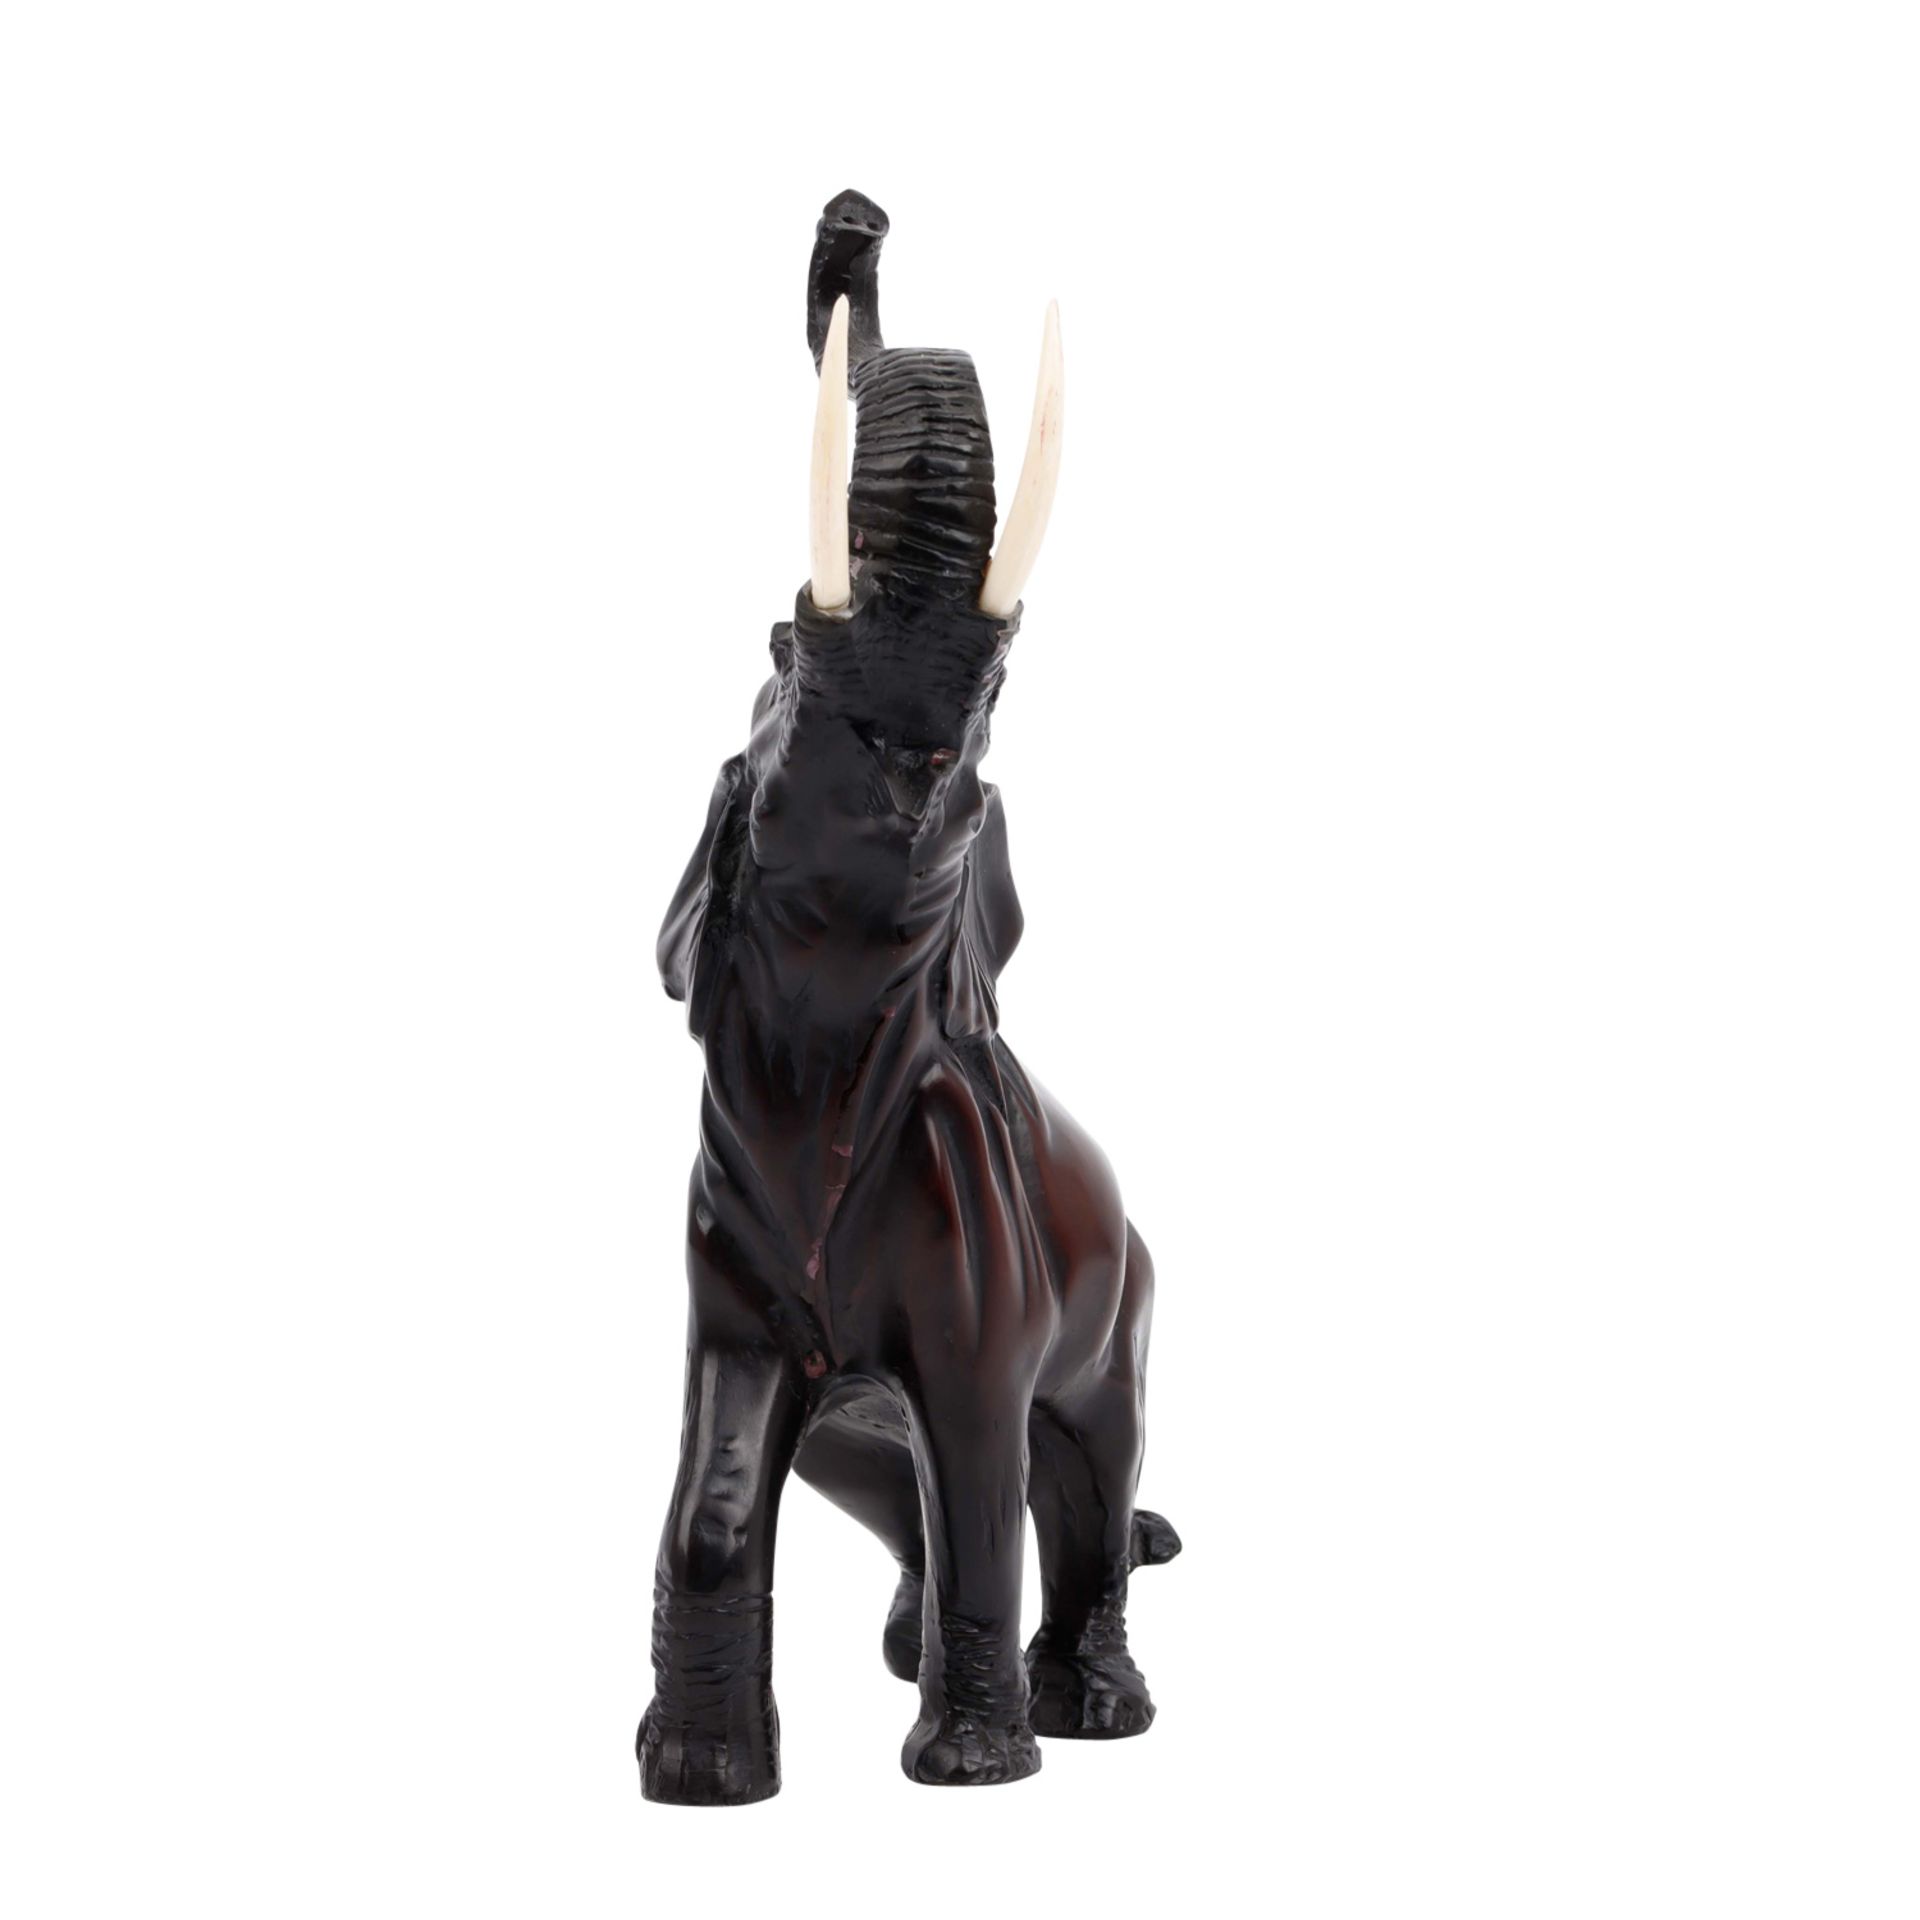 Dekorative Skulptur eines Elefanten. AFRIKA. - Image 4 of 6